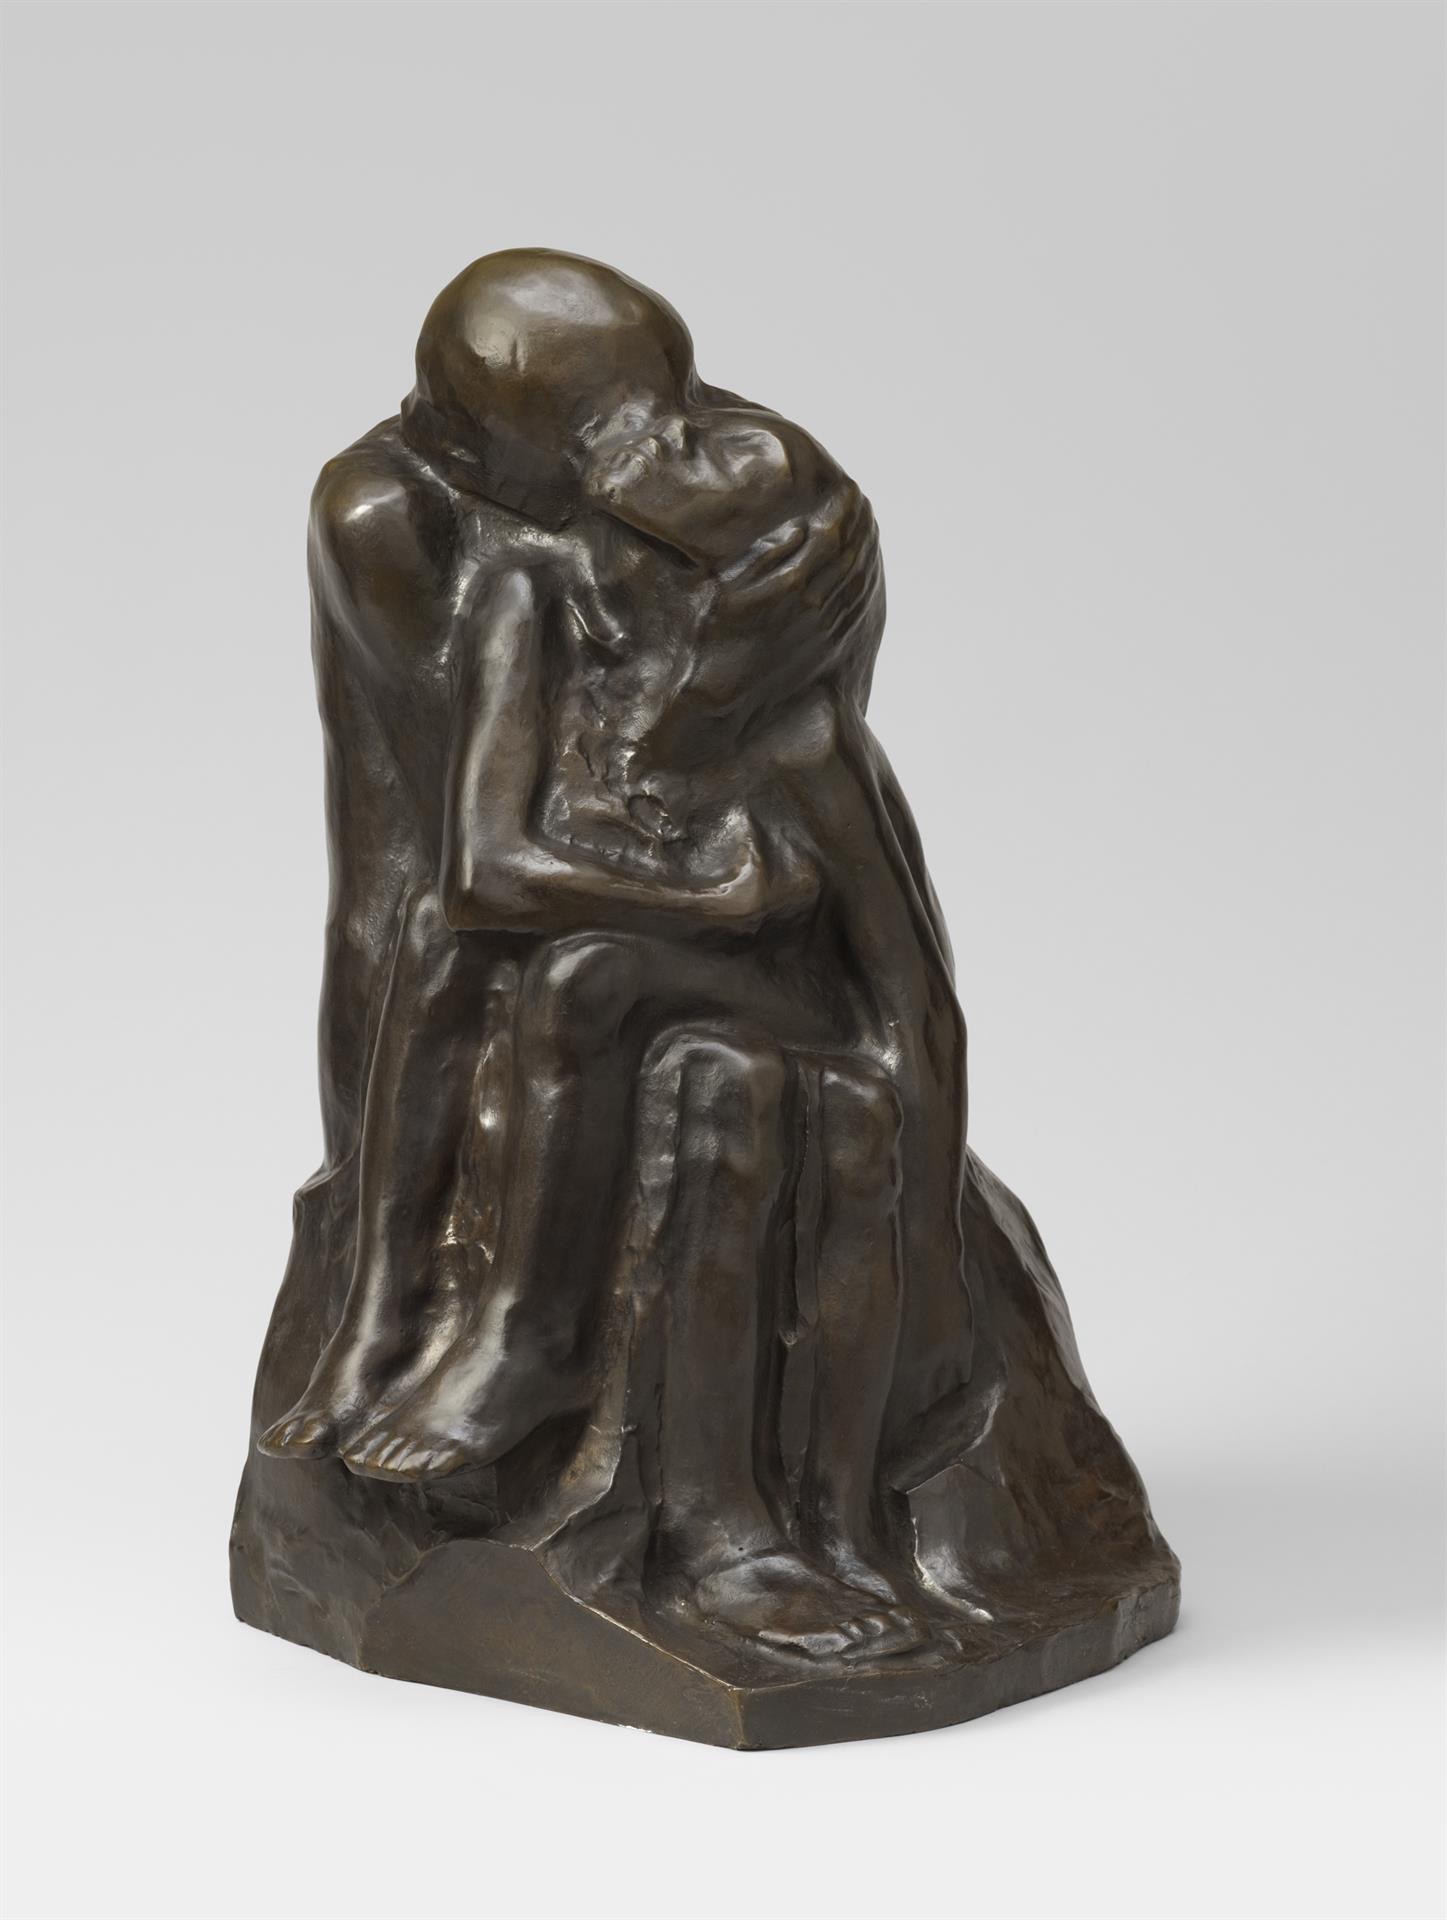 Käthe Kollwitz, Pair of Lovers, 1913-1915, bronze, Seeler 19.II.B.9., Cologne Kollwitz Collection © Käthe Kollwitz Museum Köln